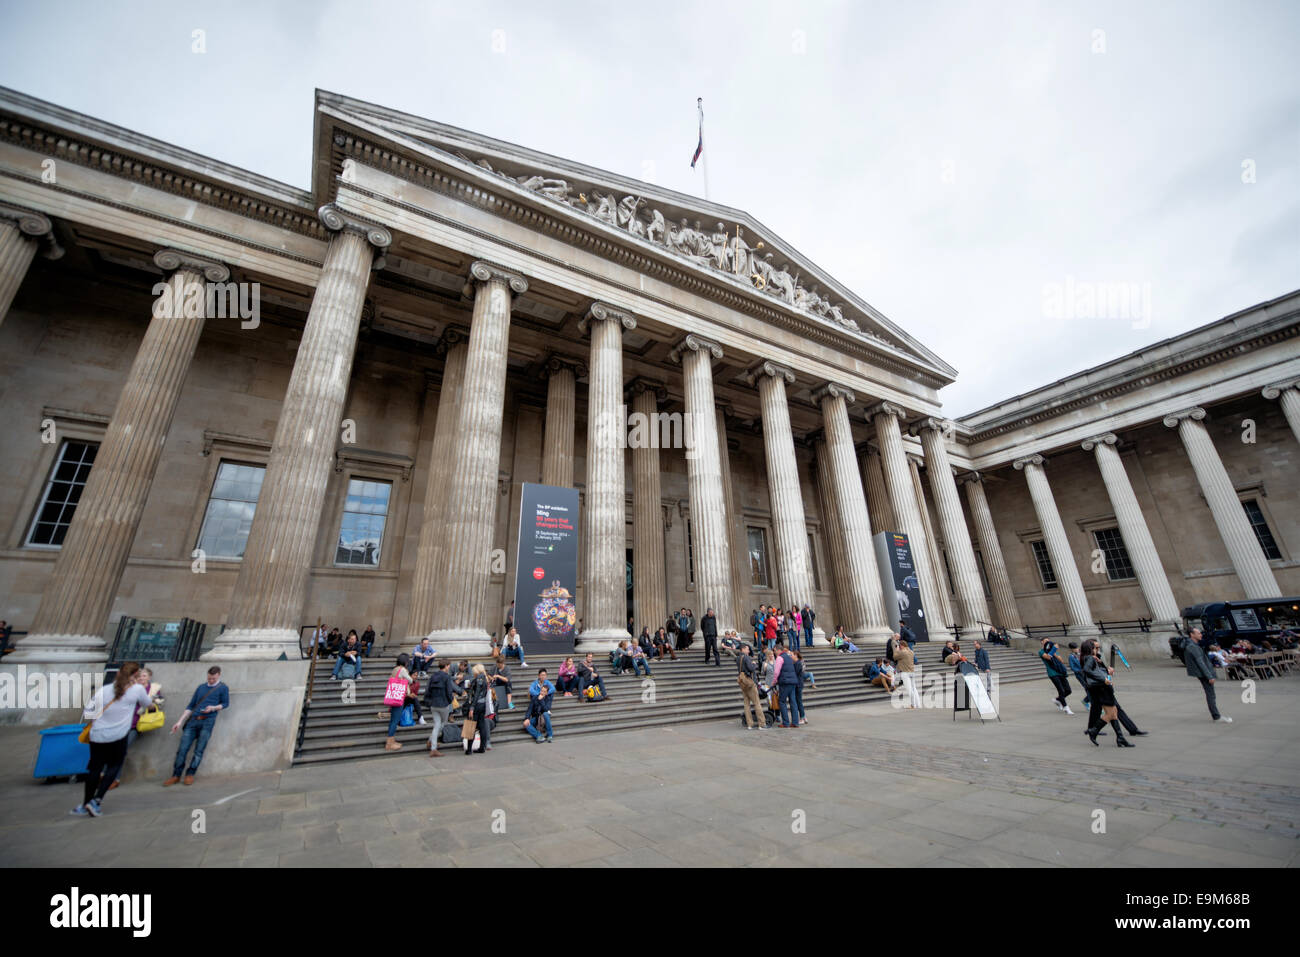 LONDON, Großbritannien - Besucher betreten den Haupteingang des British Museum in der Innenstadt von London. Das Museum ist der Geschichte und Kultur der Menschheit gewidmet und hat etwa 8 Millionen Werke in seiner permanenten Sammlung. Das British Museum in London beherbergt eine riesige Sammlung von Kunst und Artefakten der Welt, die die Geschichte, Kultur und Zivilisationen der Menschheit aus der ganzen Welt widerspiegeln. Stockfoto